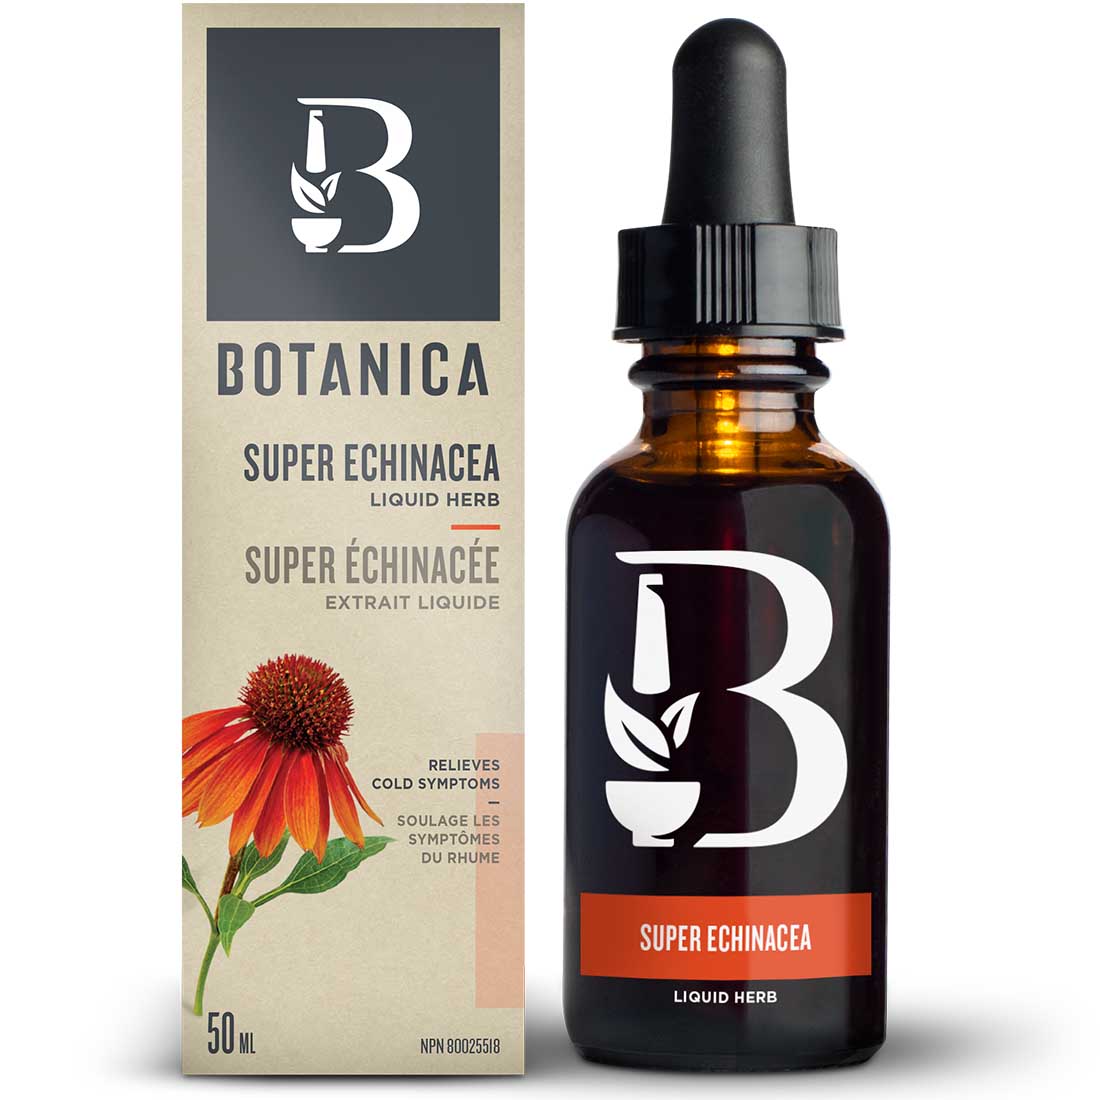 Botanica Super Echinacea Liquid Herb, 50ml